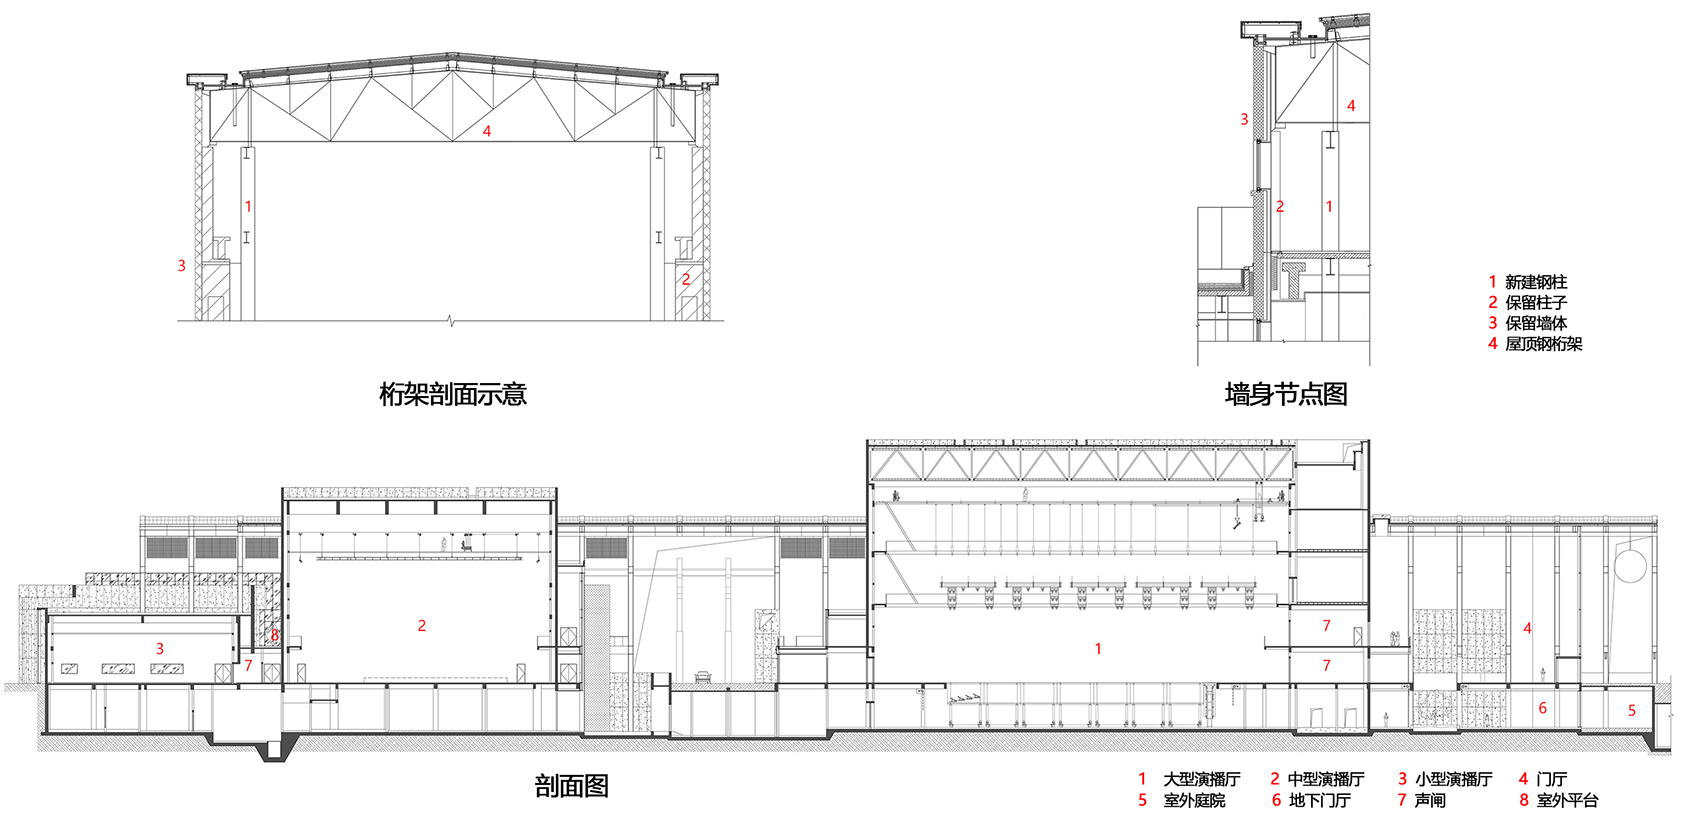 首钢制氧厂南片区更新改造项目，北京/给冬奥公园注入“氧气”-120